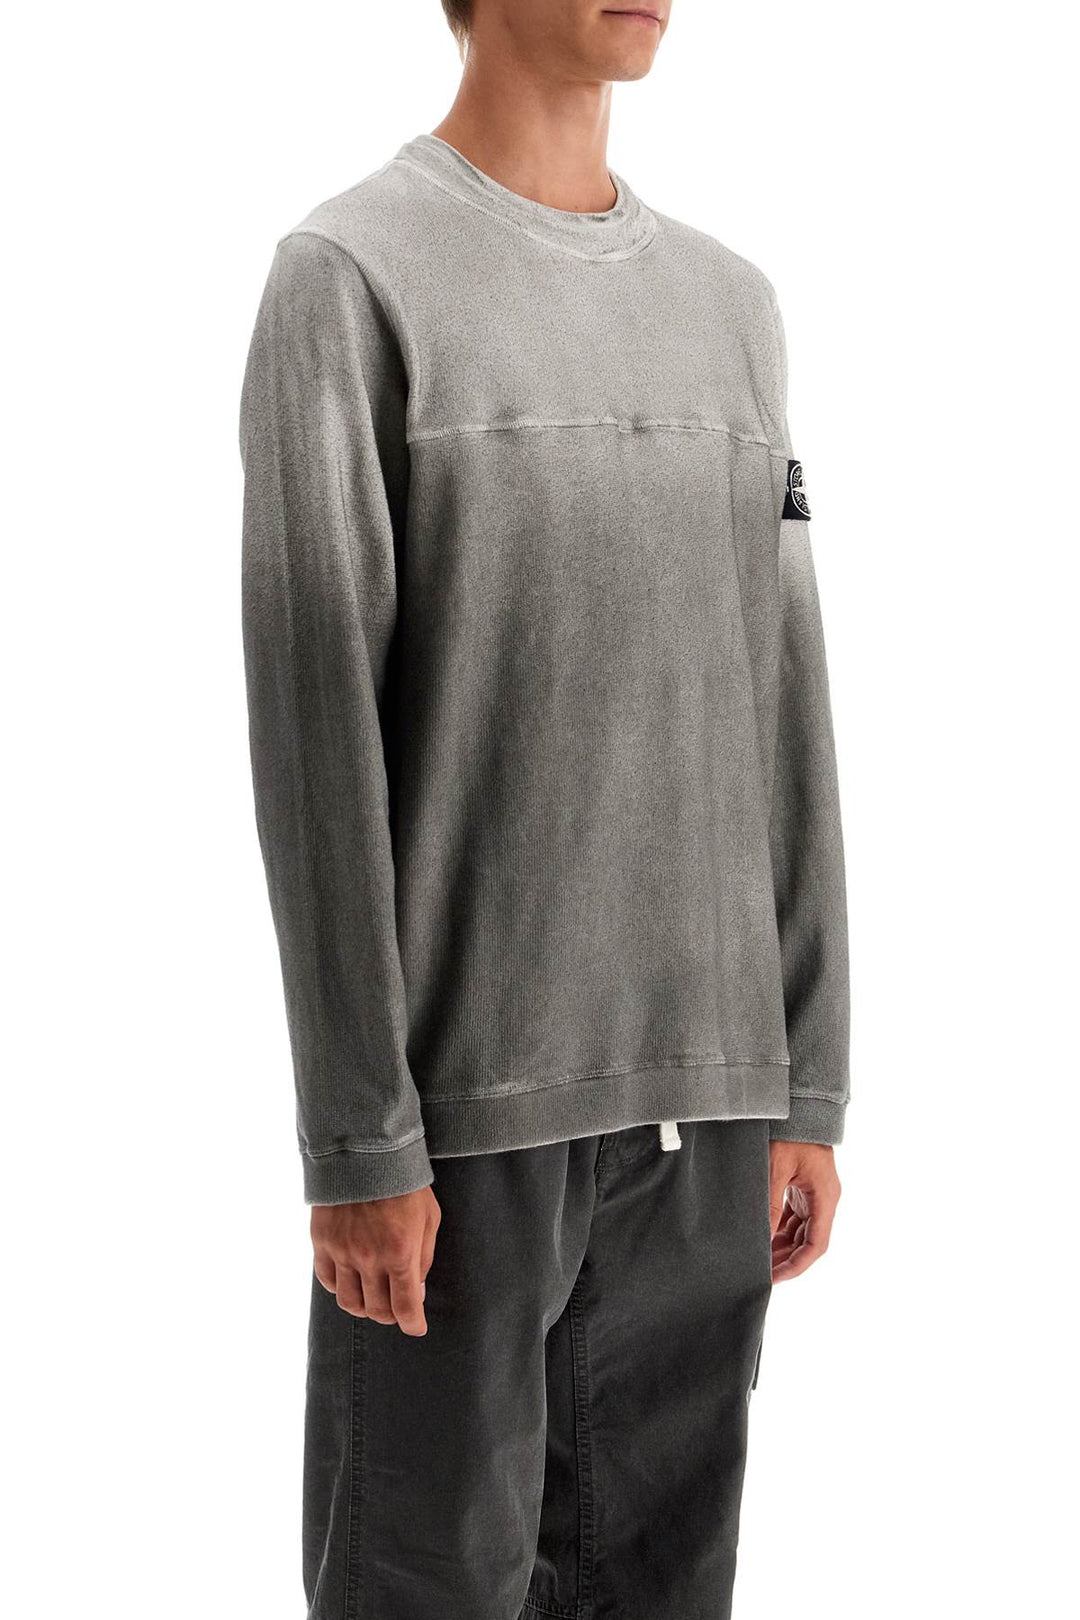 Stone Island Cotton Blend Gradient Sweatshirt   Grey